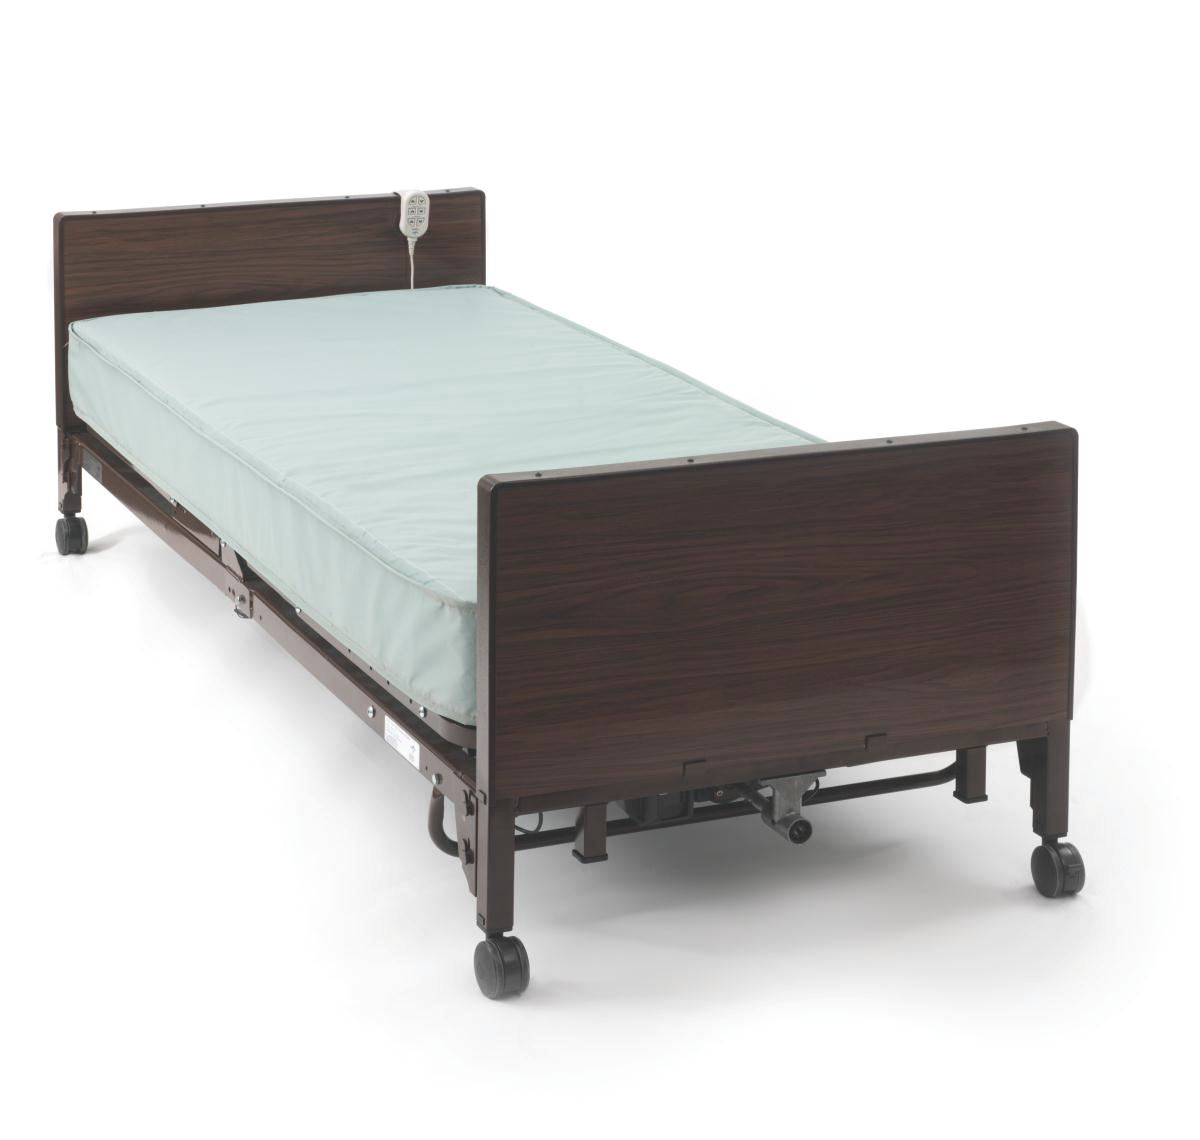 Basic Hospital Bed